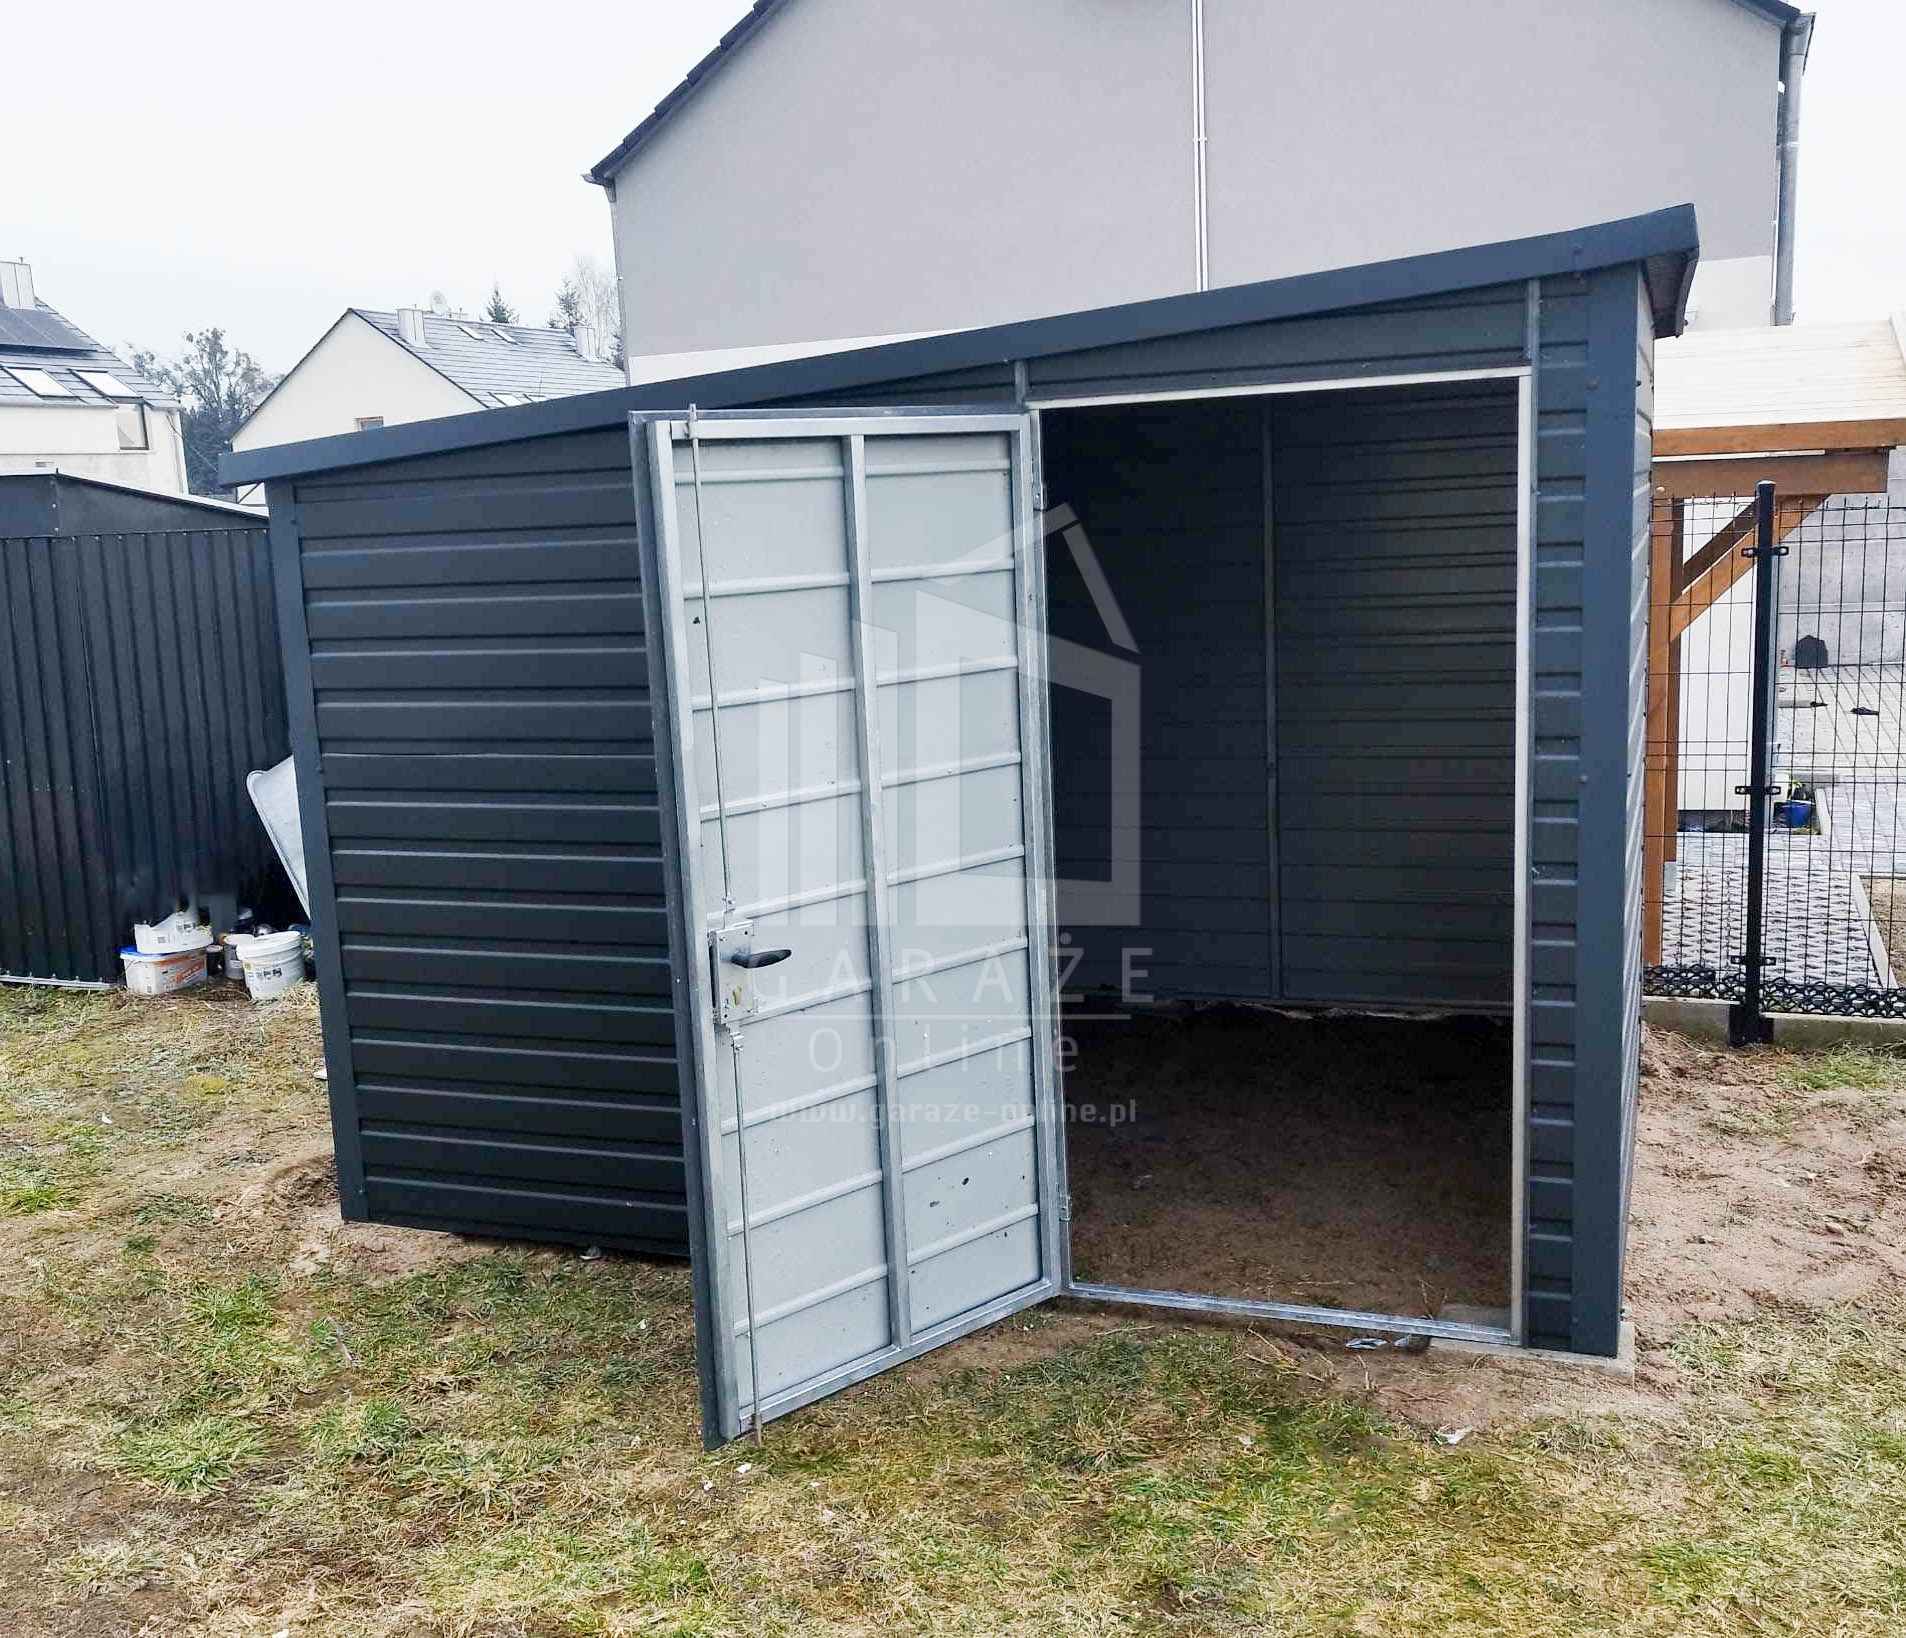 Domek Ogrodowy - Schowek - Garaż 2,5x2,5 Dach z Spadkiem w lewo ID490 Łodzia - zdjęcie 4